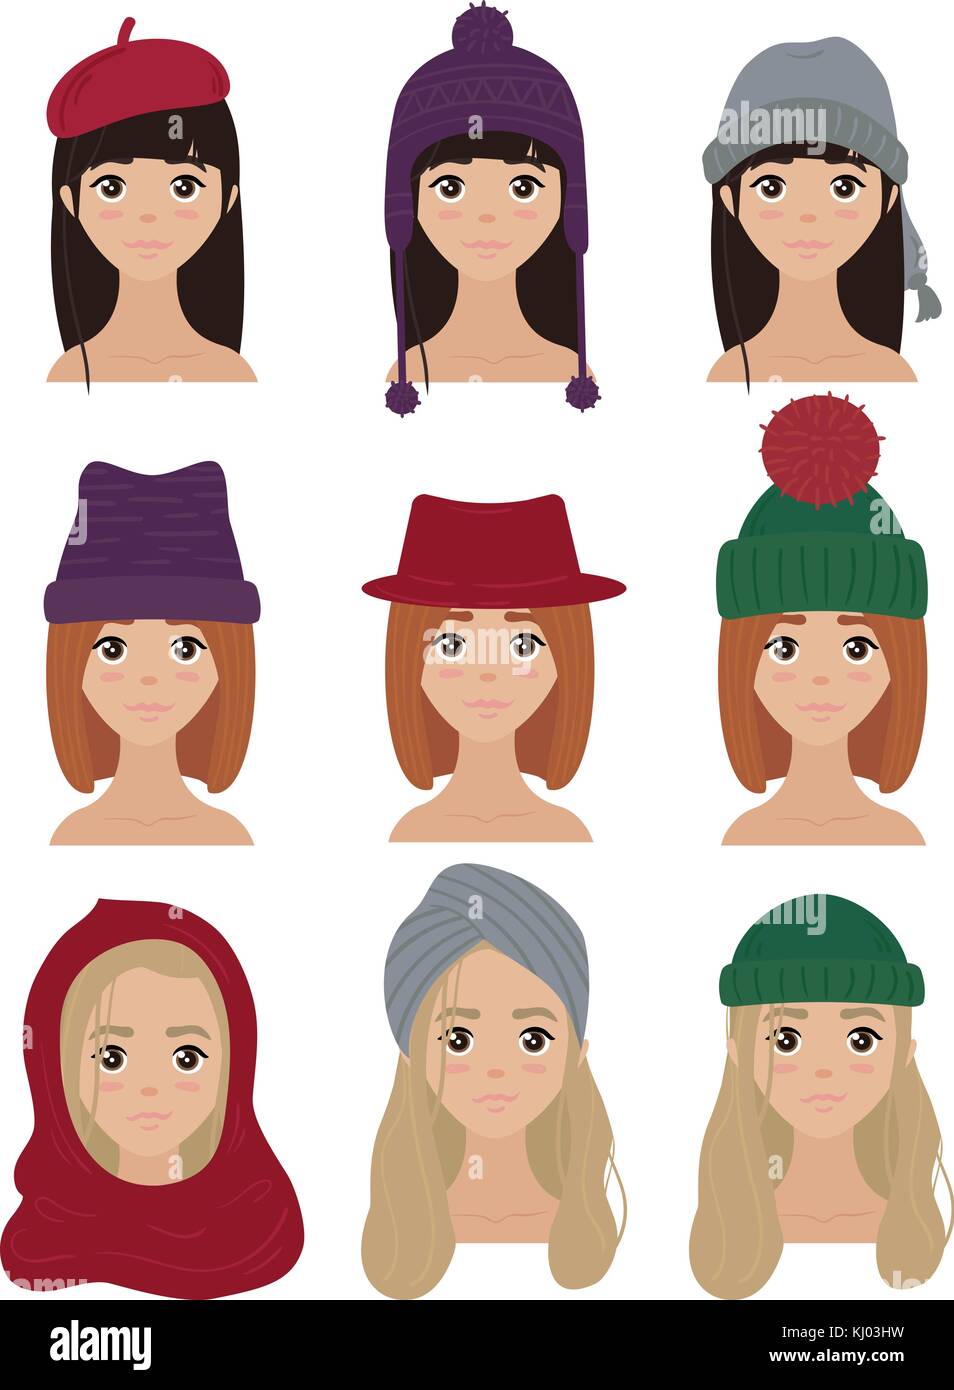 Jeu de caractères de femmes élégantes chapeaux d'hiver Illustration de Vecteur